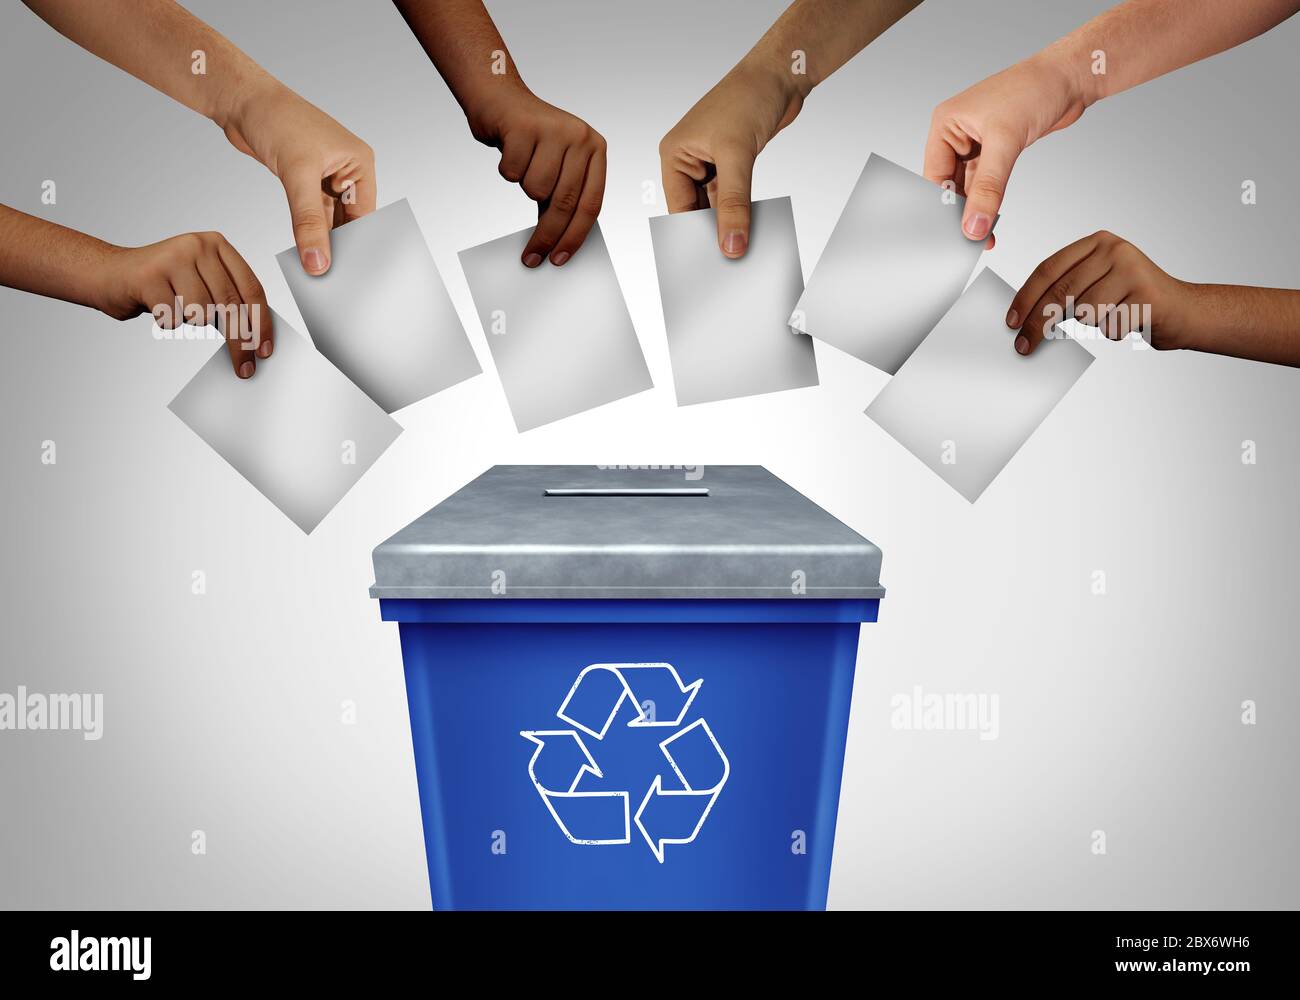 Le concept de fraude électorale et de vote gaspillé est le fait que diverses mains jettent des bulletins de vote dans un bureau de vote en forme de corbeille de recyclage comme une élection truquée. Banque D'Images